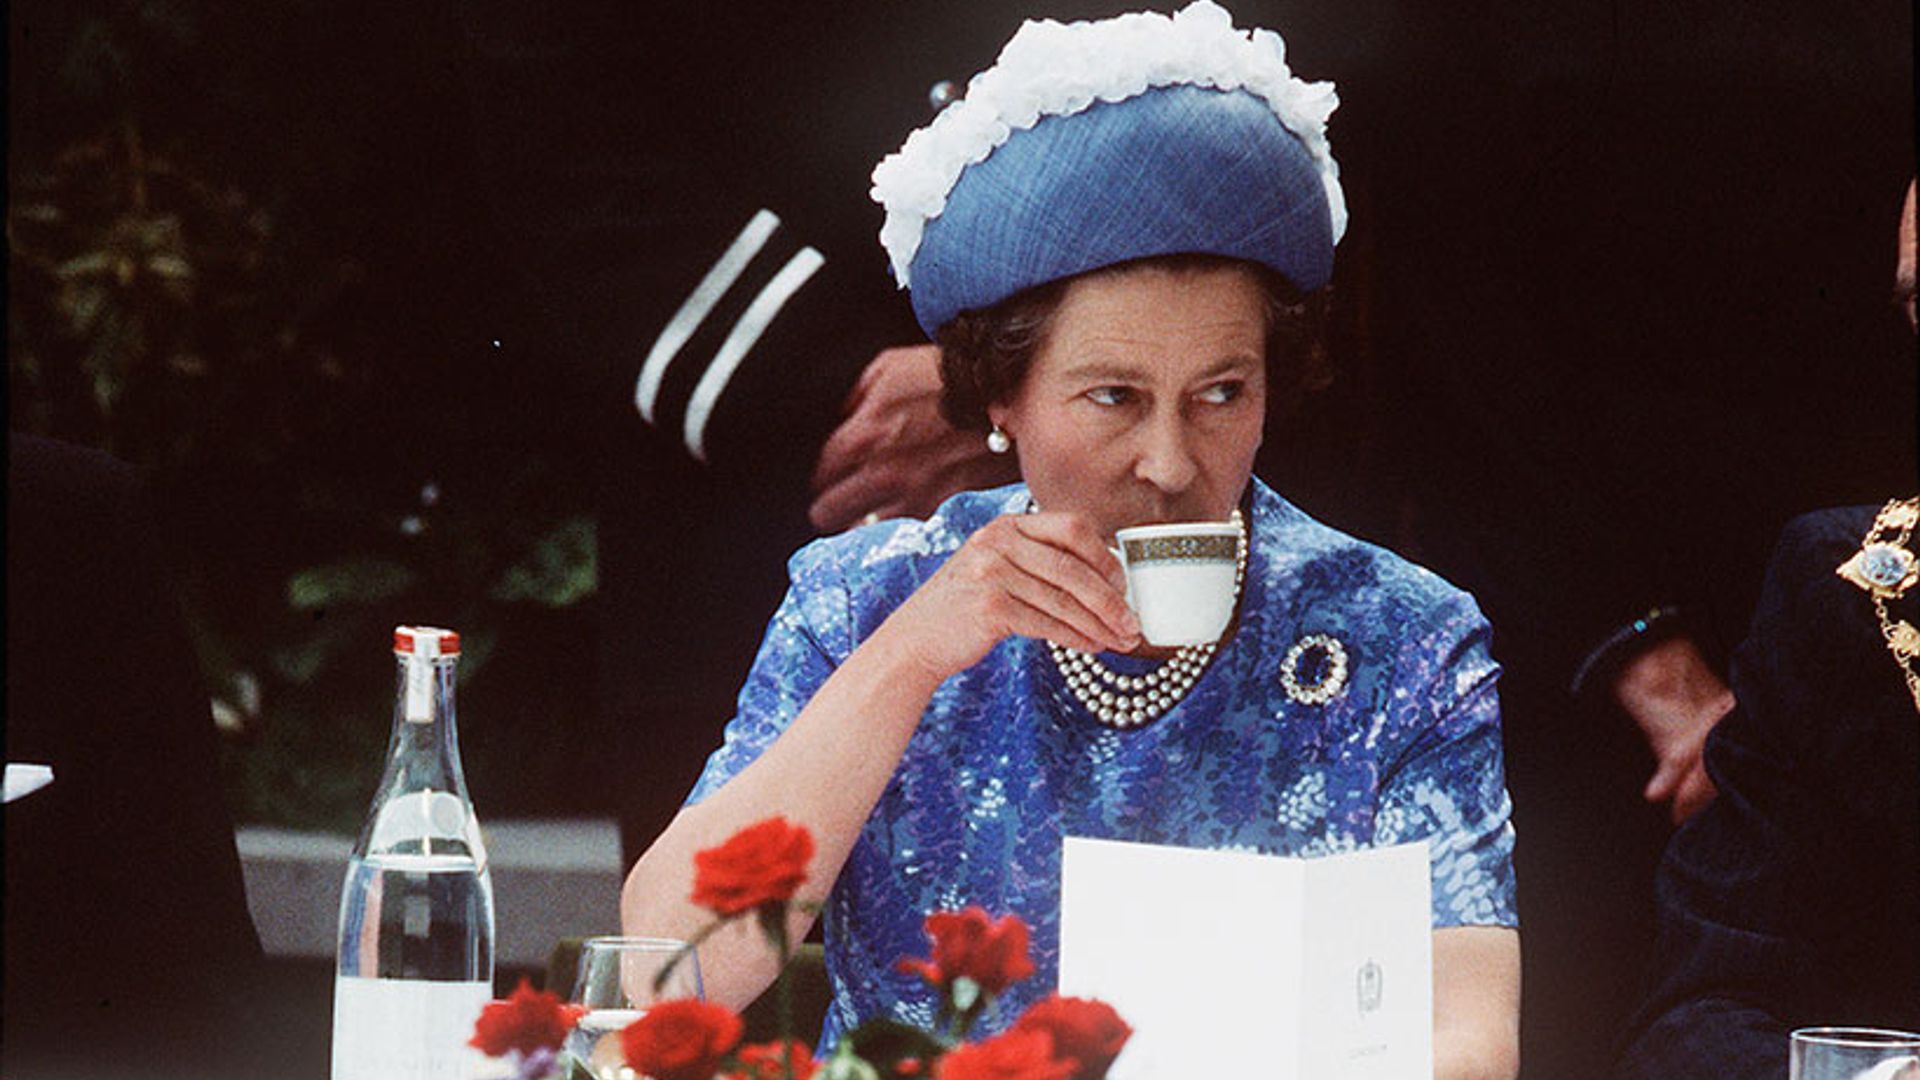 the queen tea